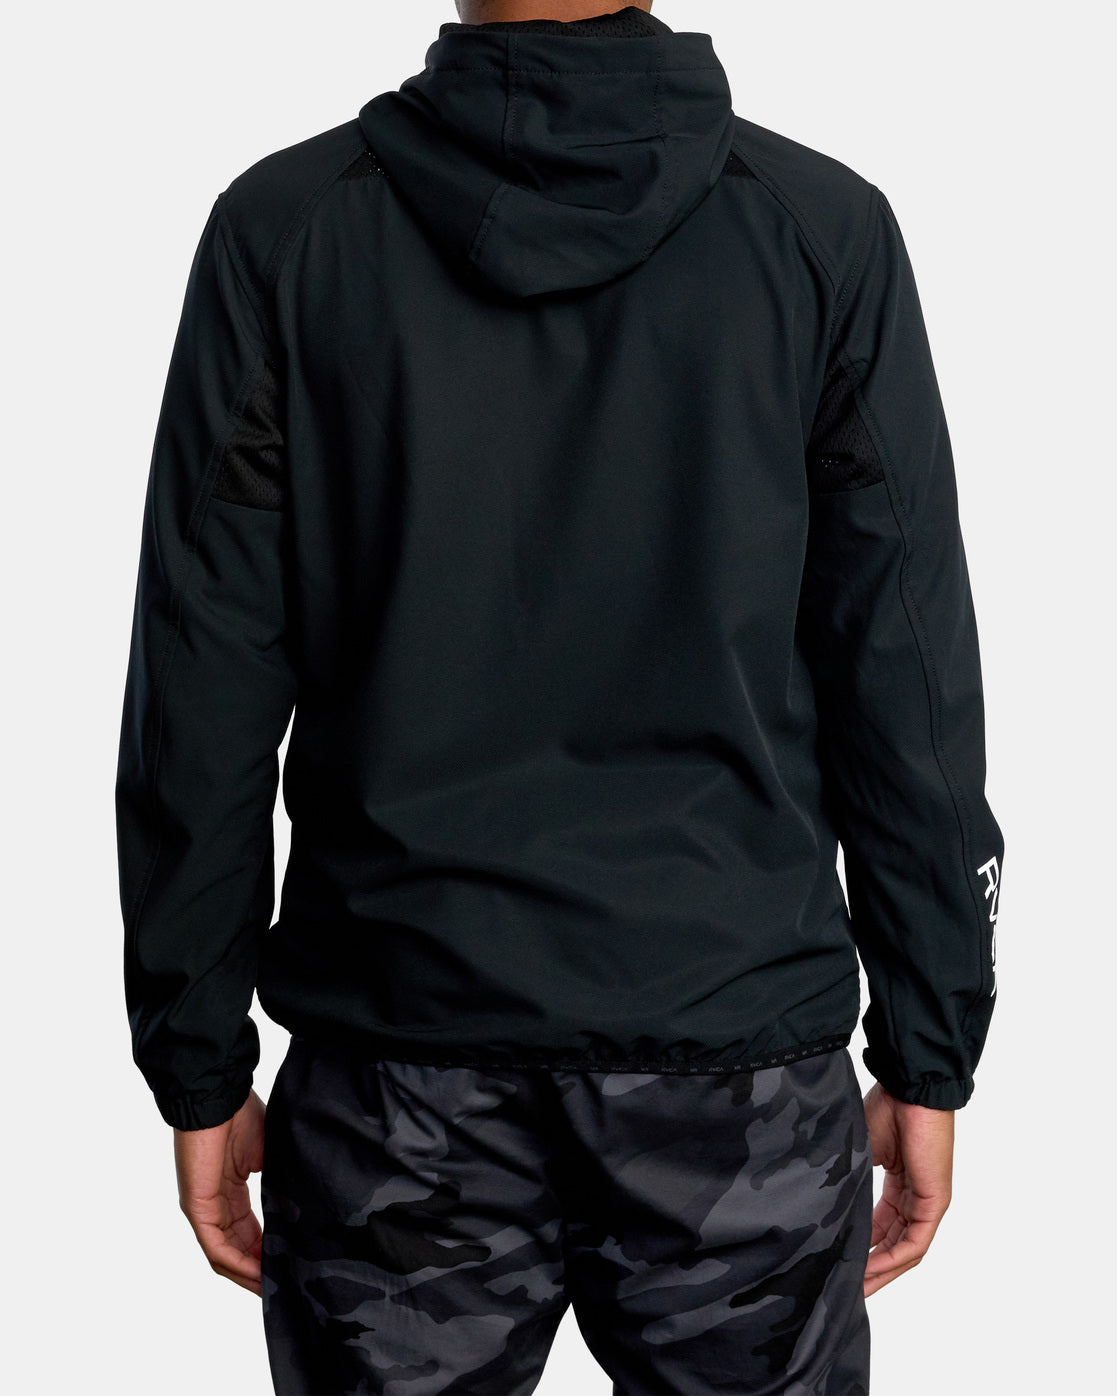 Yogger Zip-Up Hooded Jacket II - Black